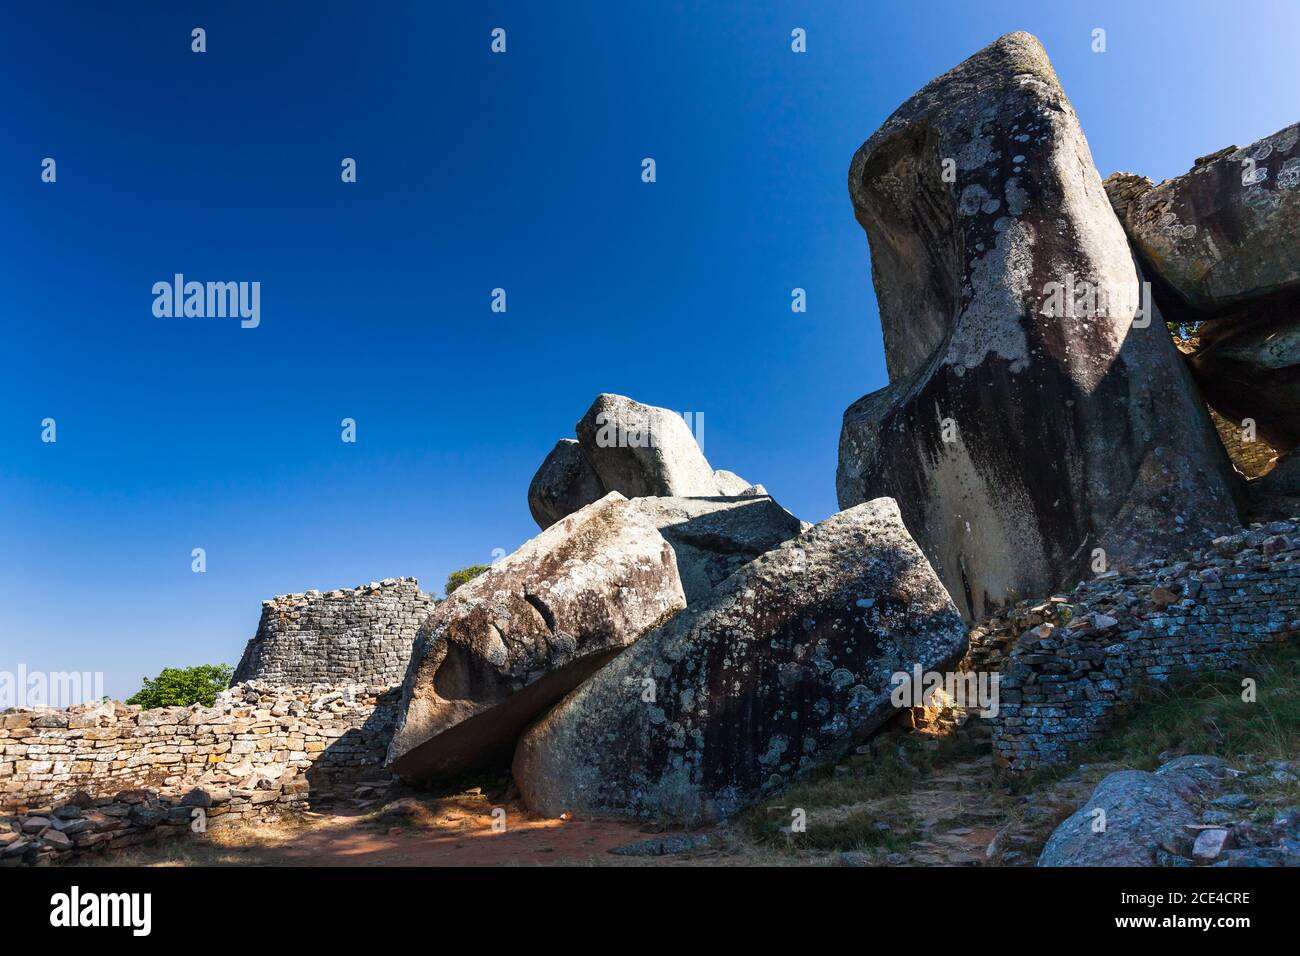 Grandes ruinas de Zimbabwe, rocas naturales en el complejo de la colina, o acrópolis, antigua capital de la civilización Bantu, provincia de Masvingo, Zimbabwe, África Foto de stock